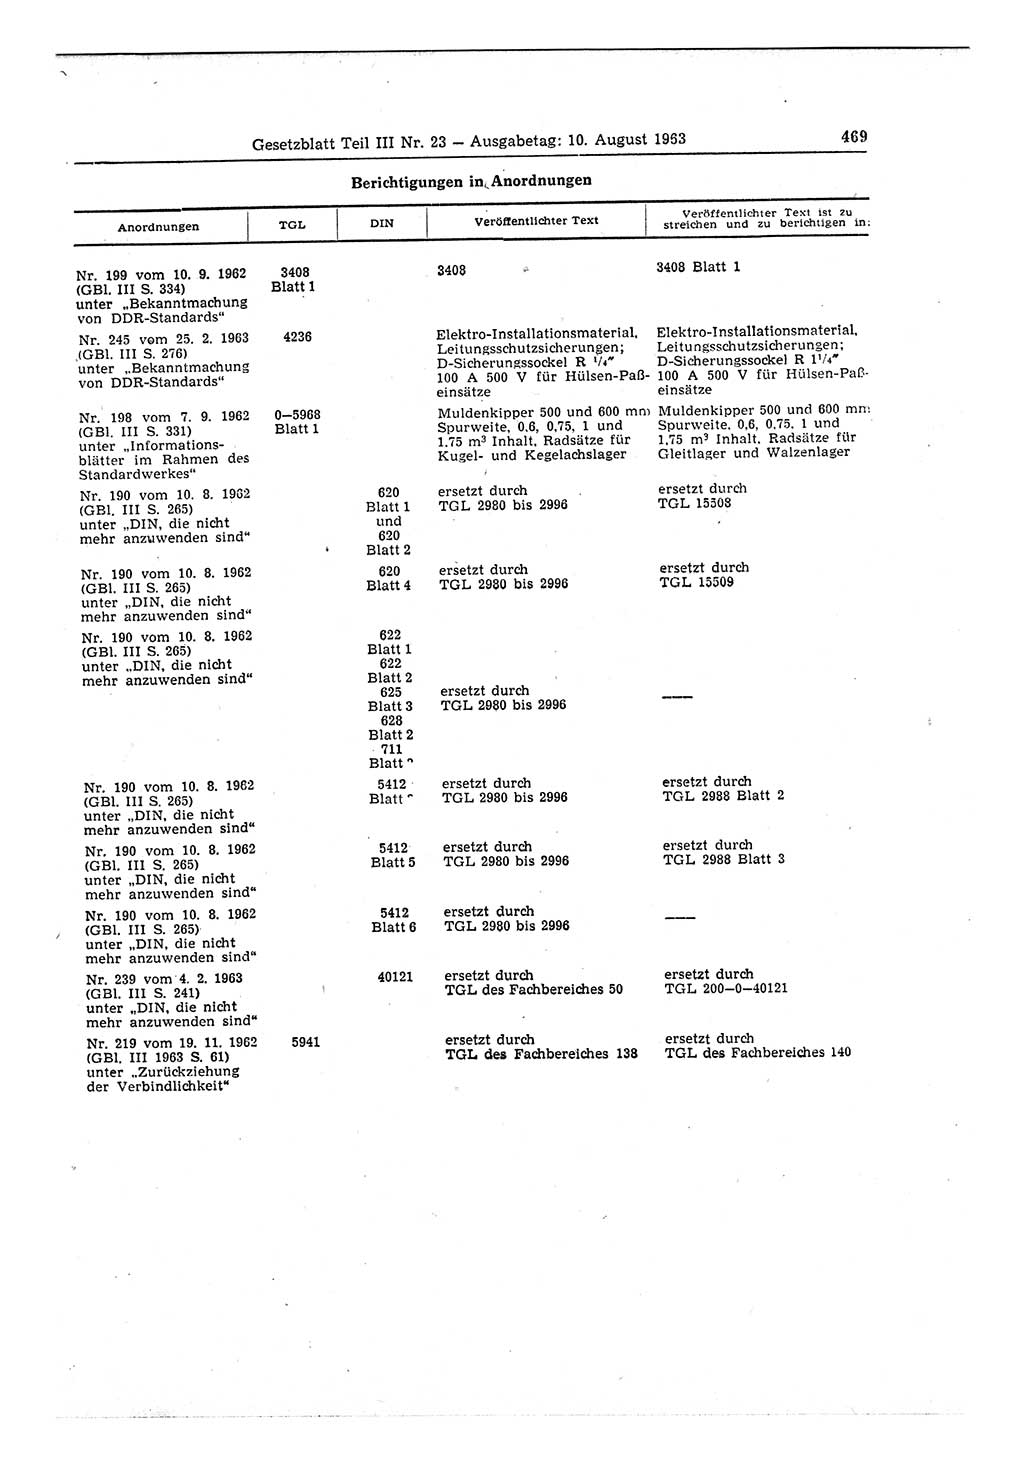 Gesetzblatt (GBl.) der Deutschen Demokratischen Republik (DDR) Teil ⅠⅠⅠ 1963, Seite 469 (GBl. DDR ⅠⅠⅠ 1963, S. 469)